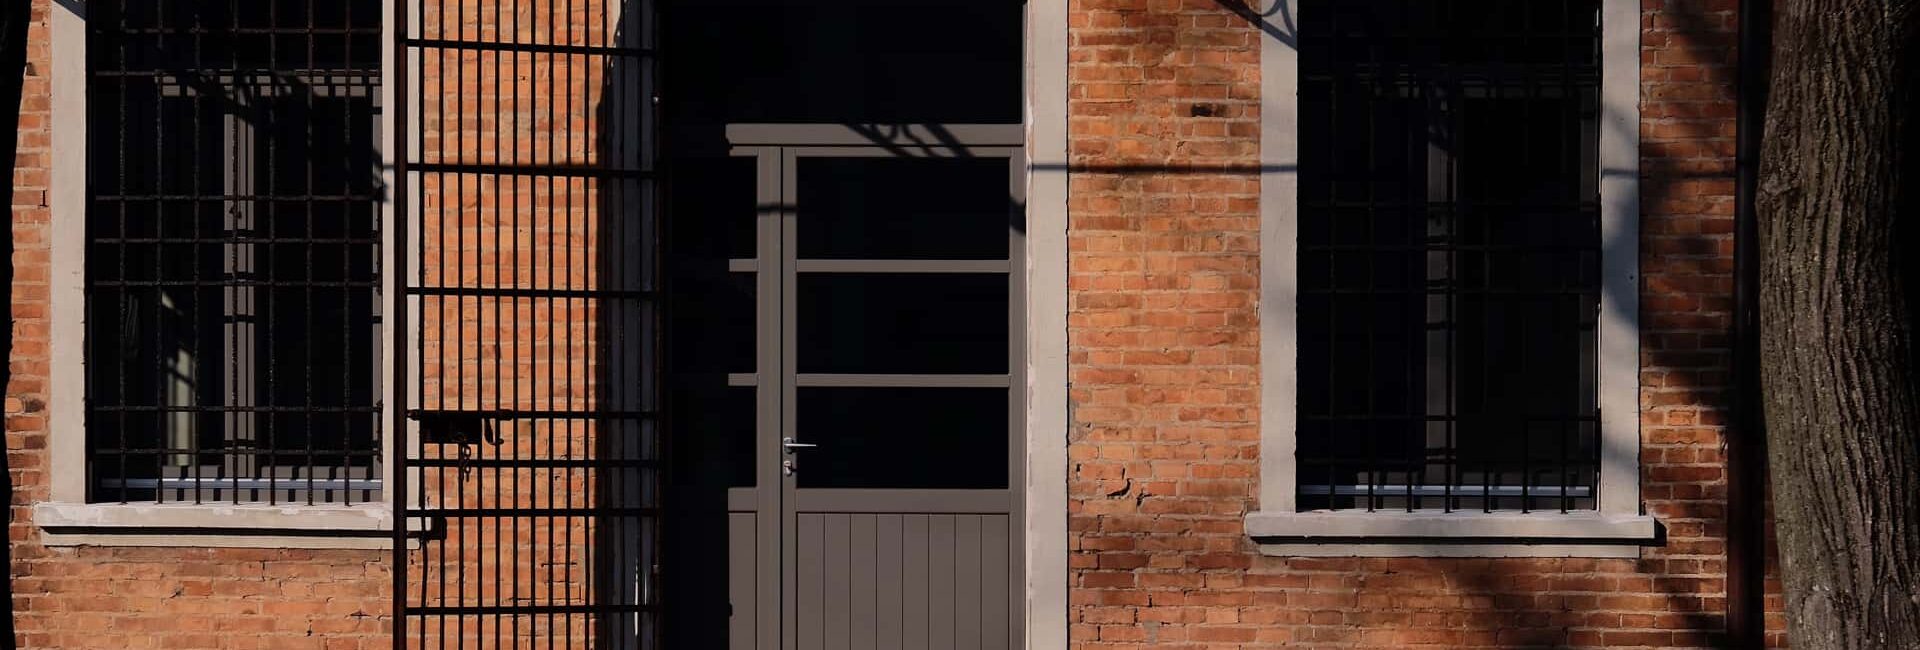 Installazione serramenti interni in legno, Portoncino ingresso e Porte interne Mantova 18